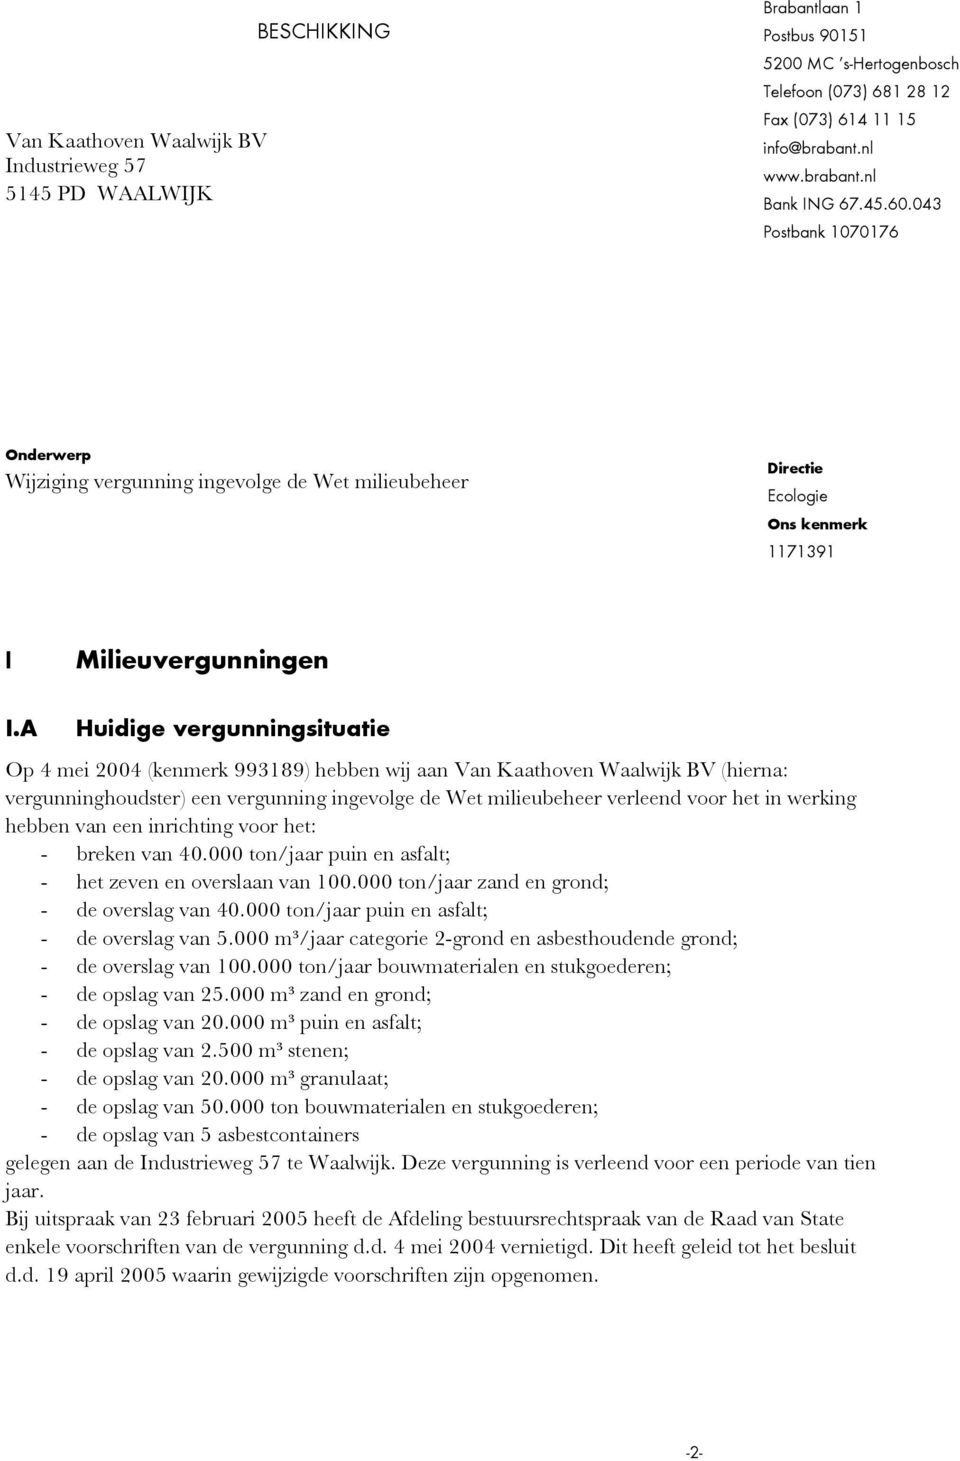 A Huidige vergunningsituatie Op 4 mei 2004 (kenmerk 993189) hebben wij aan Van Kaathoven Waalwijk BV (hierna: vergunninghoudster) een vergunning ingevolge de Wet milieubeheer verleend voor het in